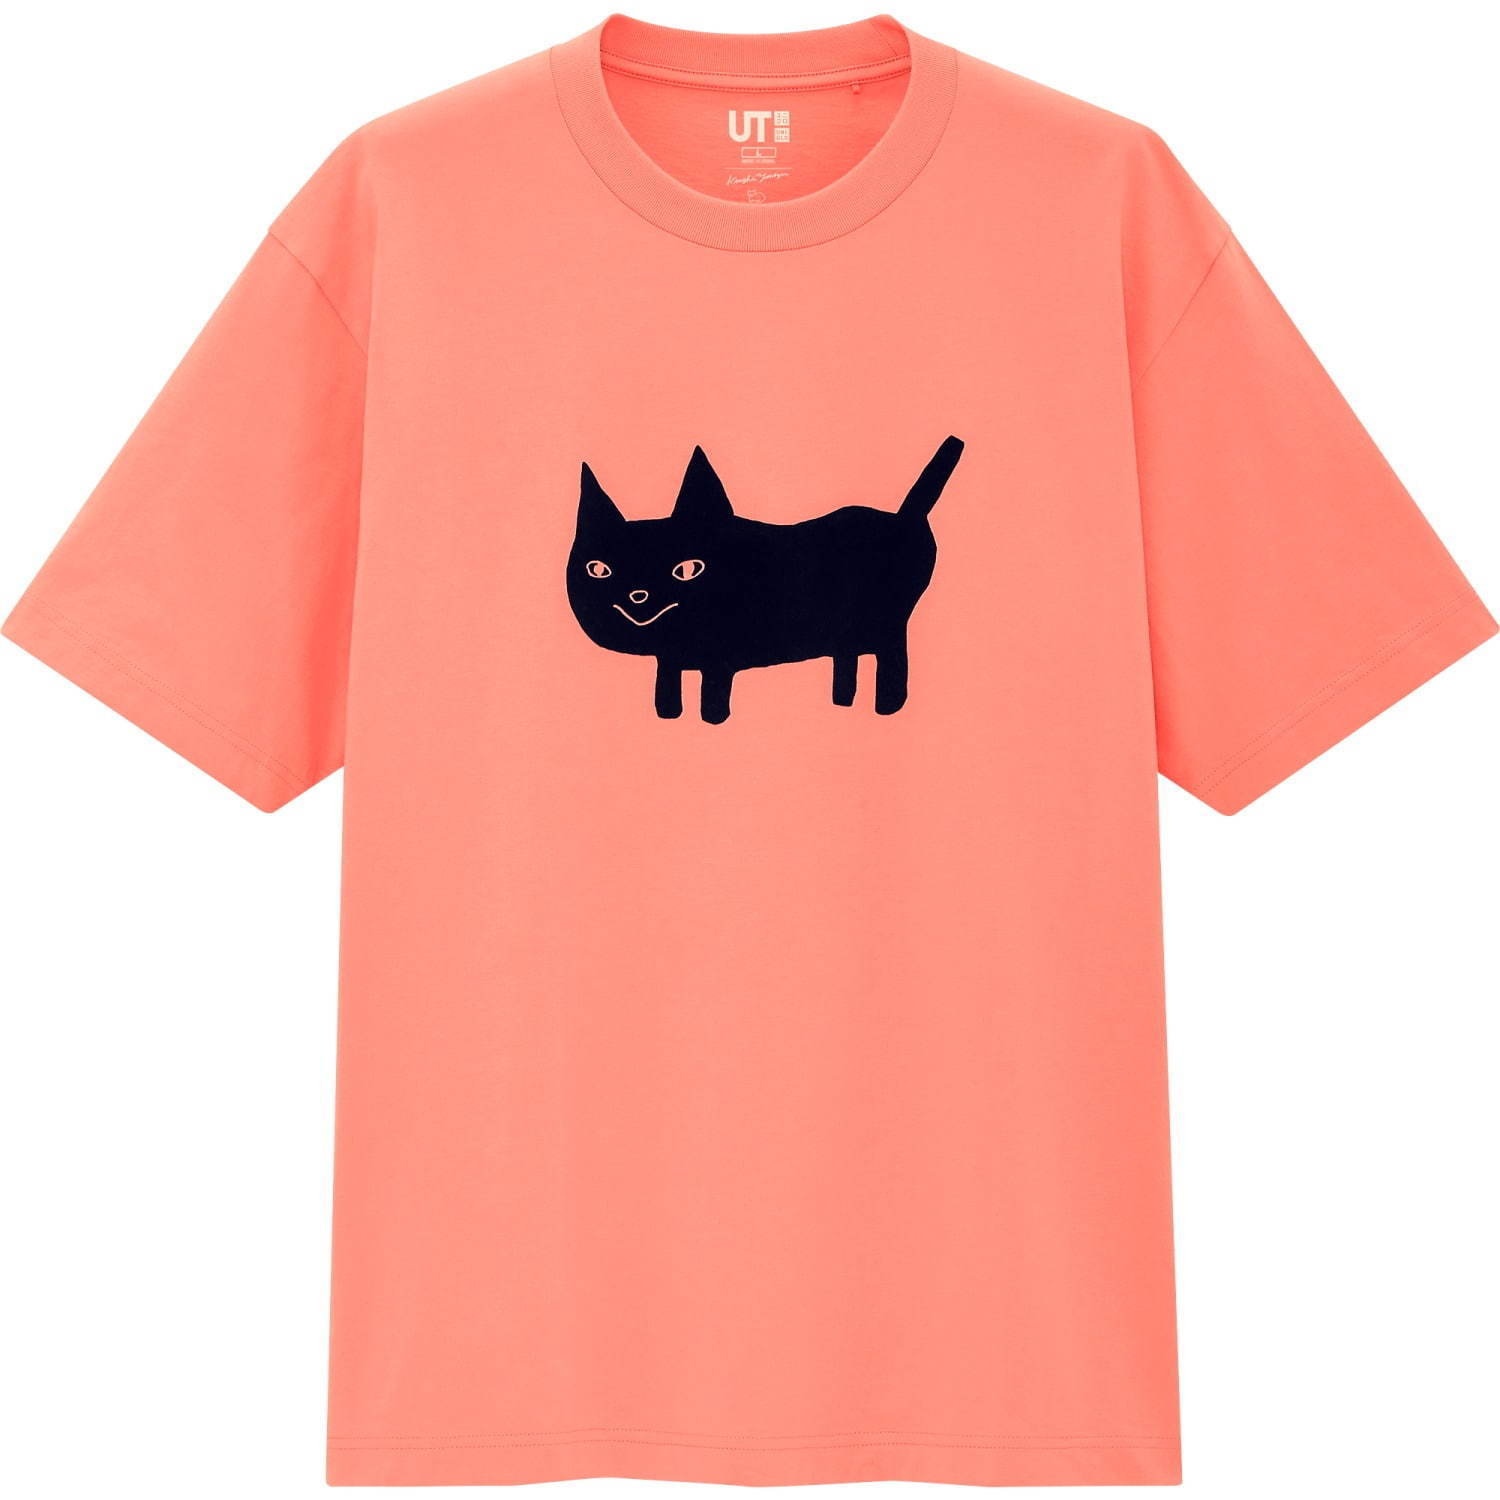 ユニクロut 米津玄師の初コラボ 米津が描くオリジナルキャラのプリントtシャツ ファッションプレス